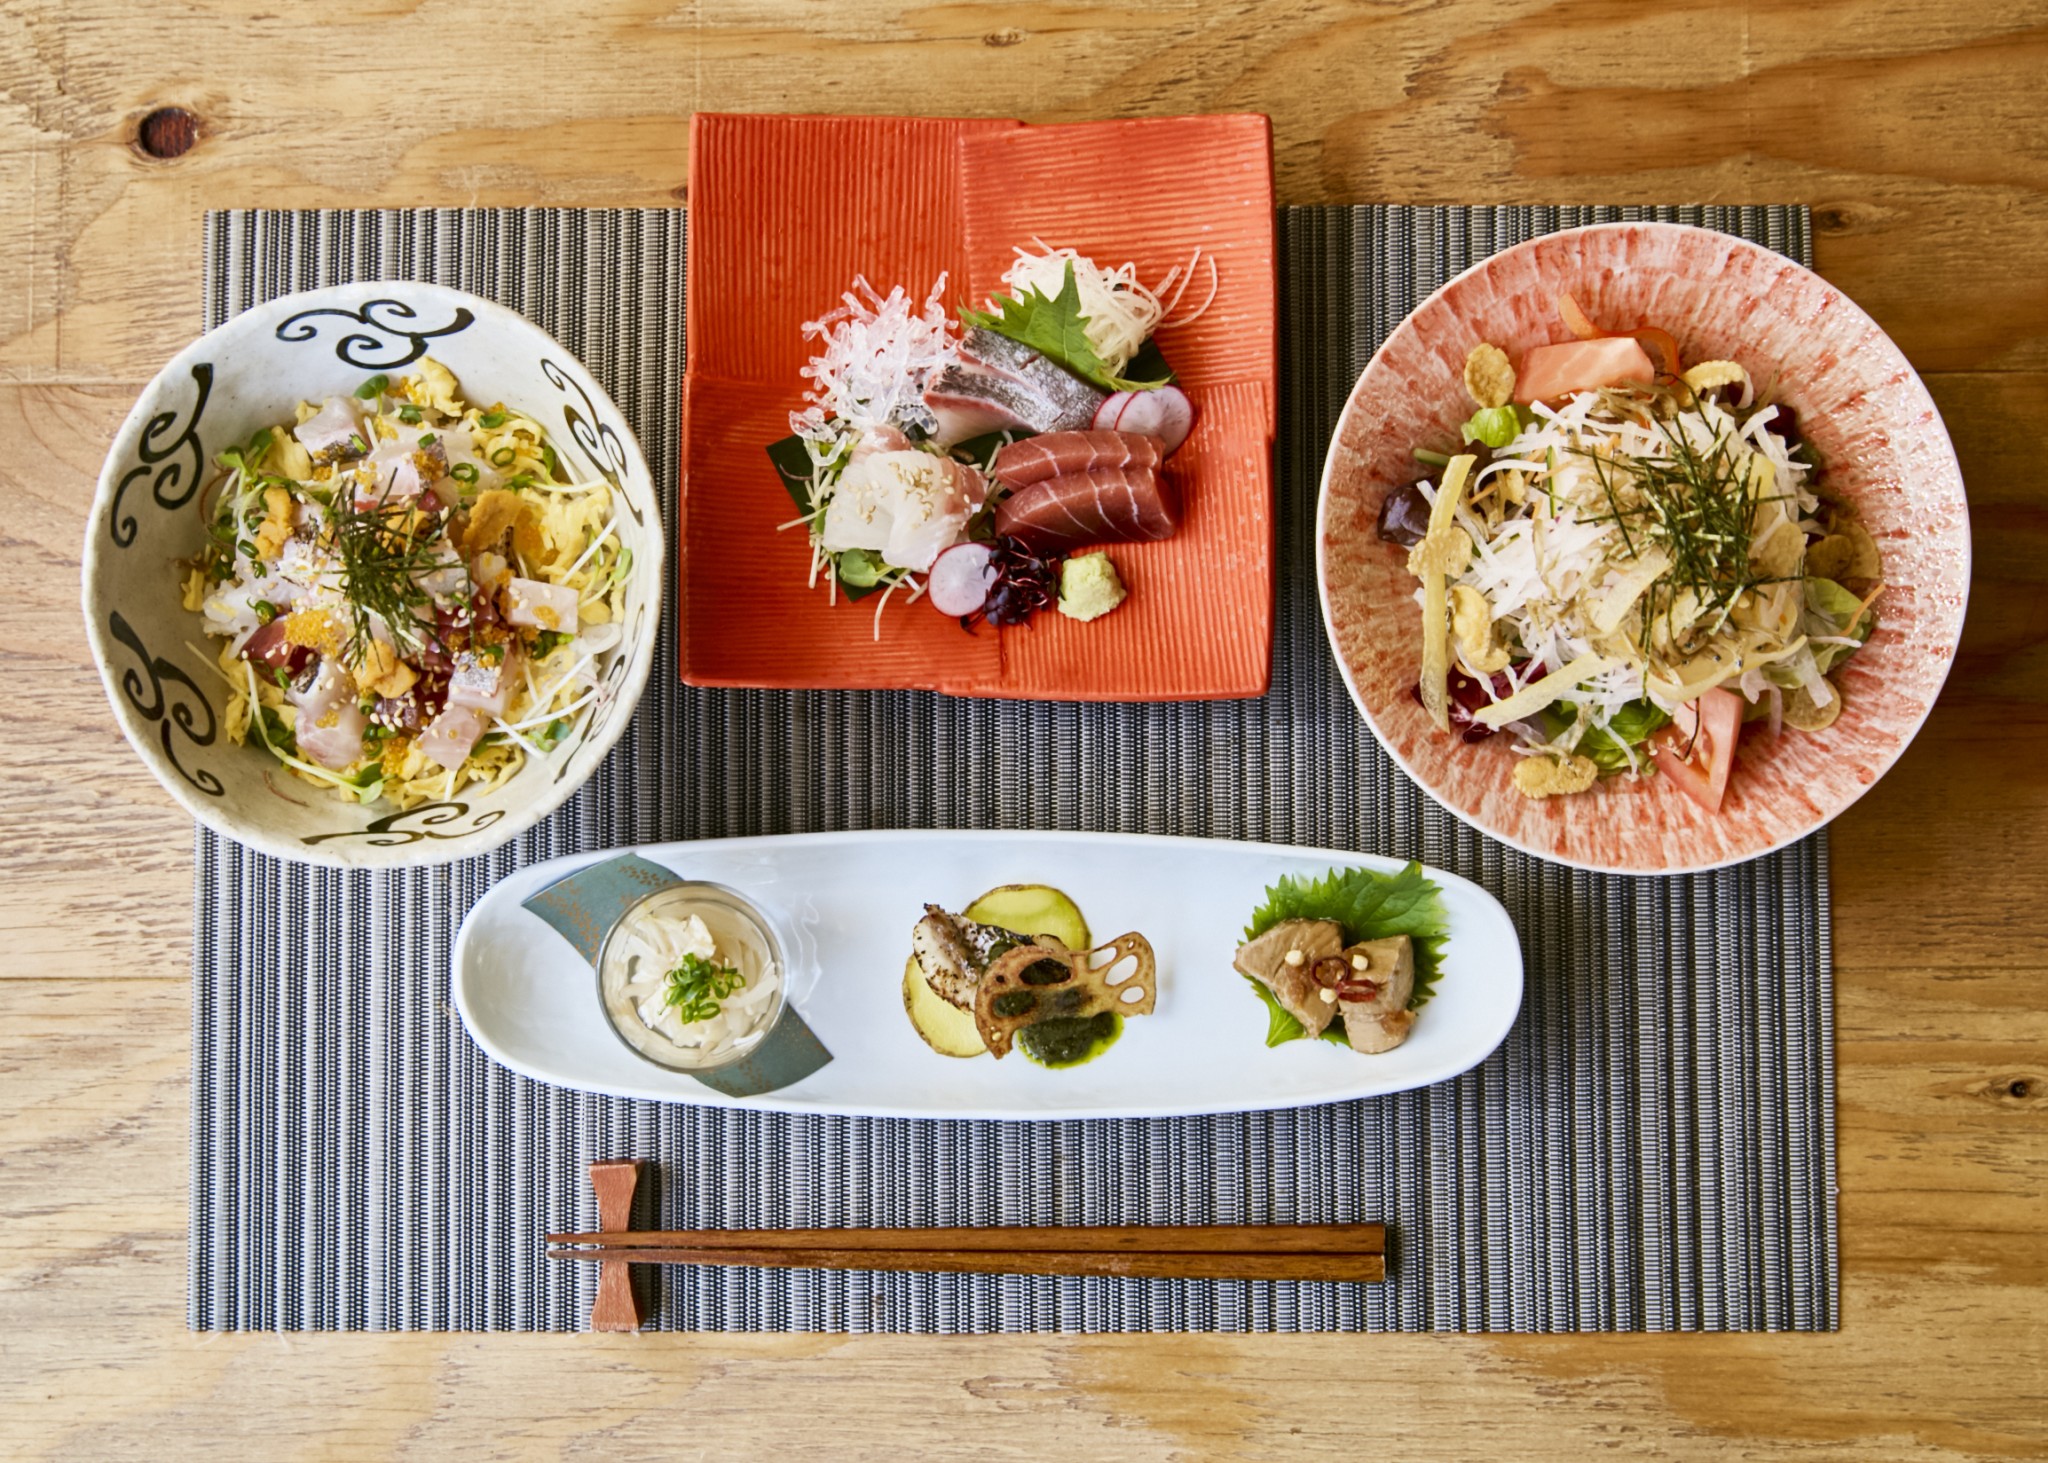 「ランチコース」、左から時計回りに「海鮮バラちらし丼」、「刺身盛り」、「サラダ」、「前菜3種」